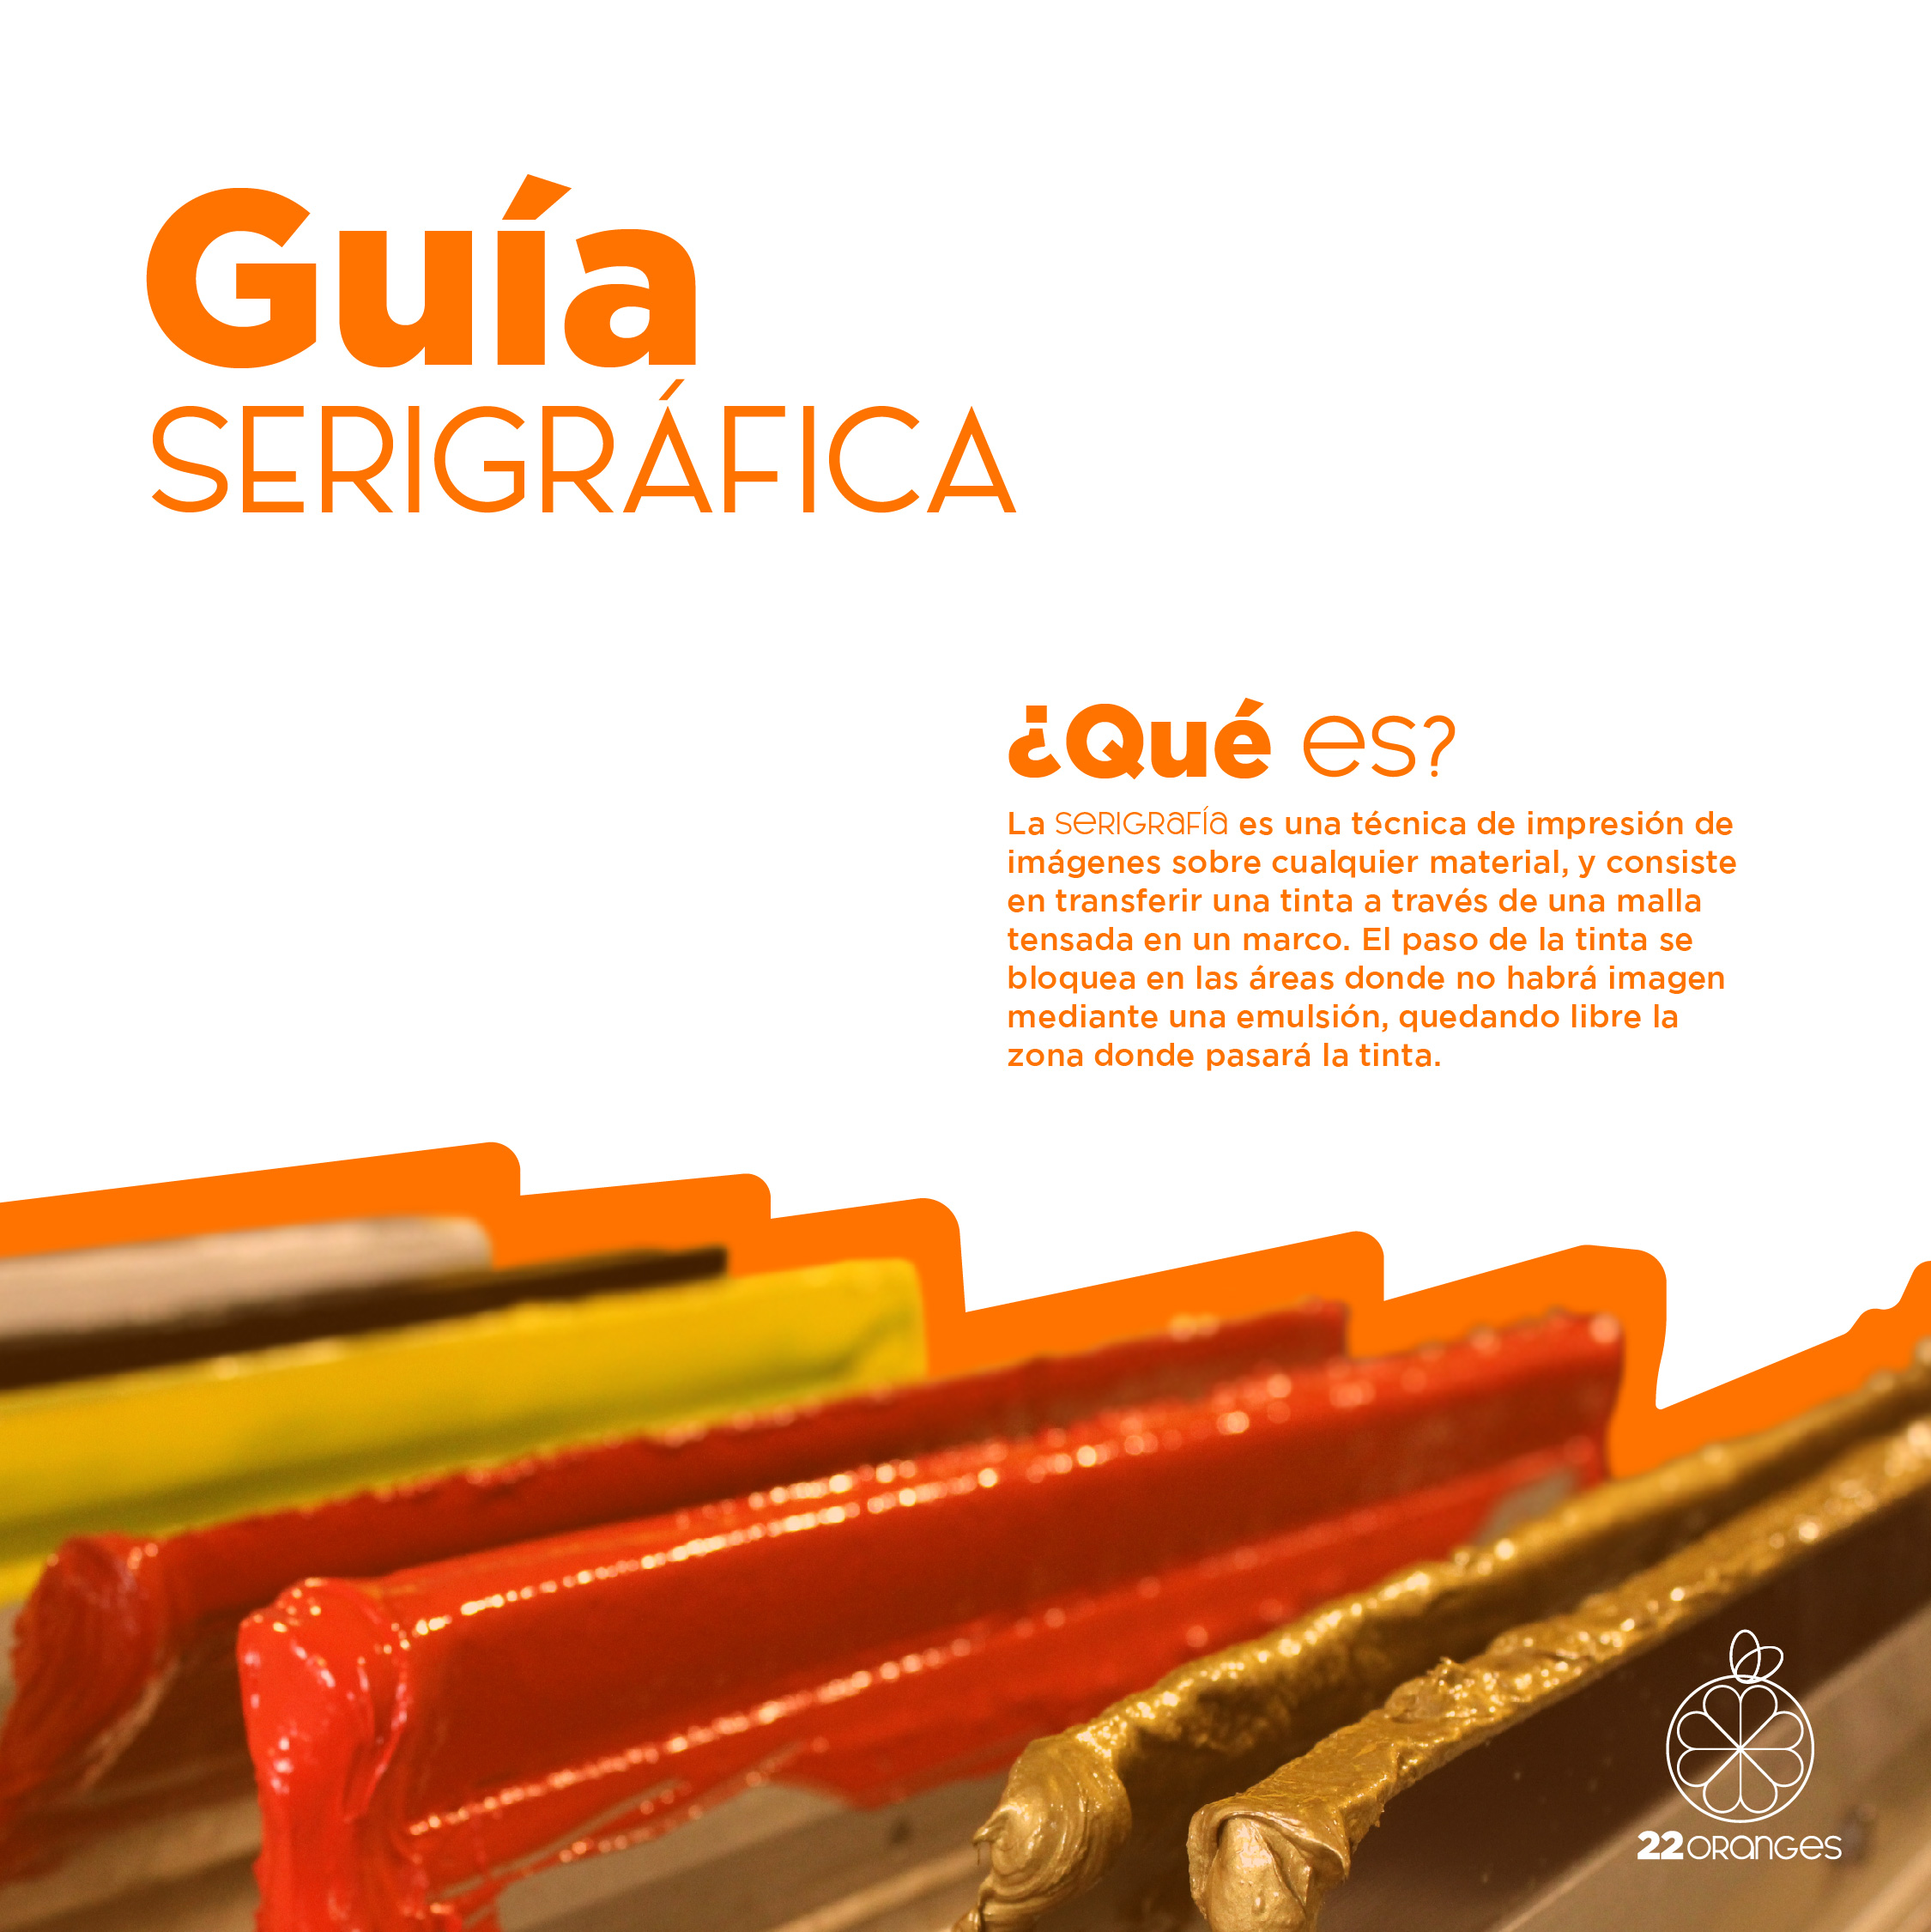 guias (2).jpg